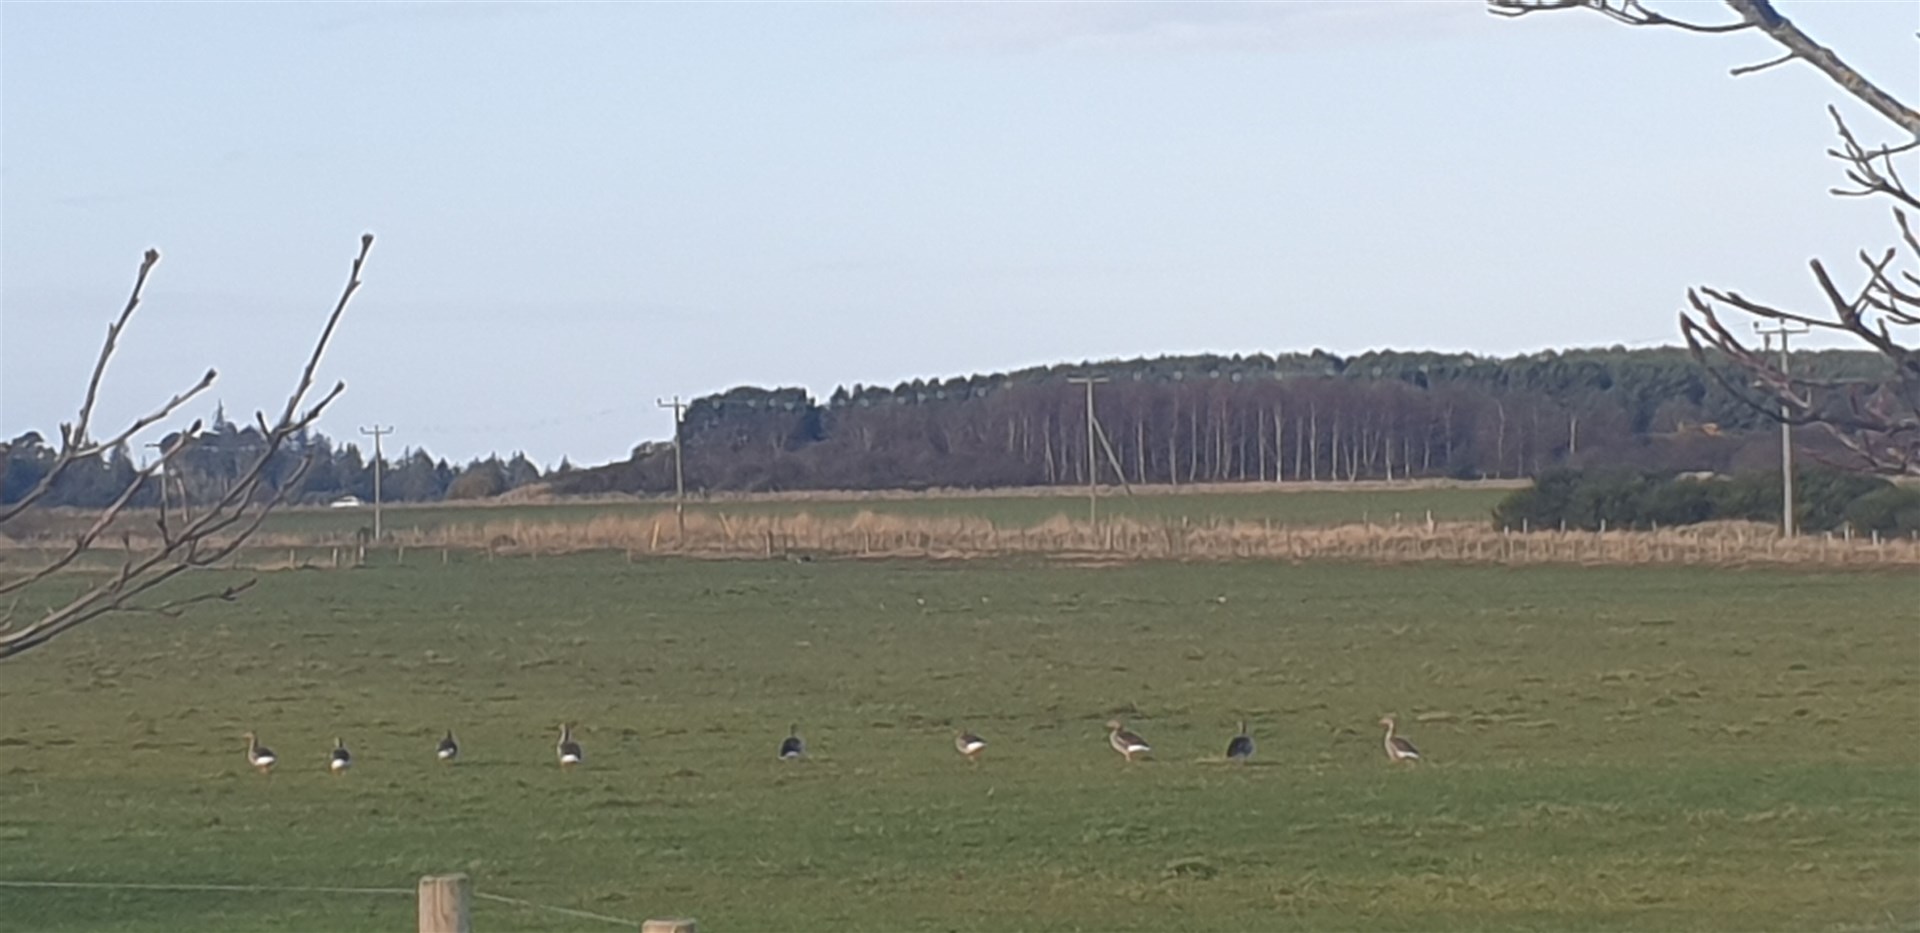 Geese in a farm field.